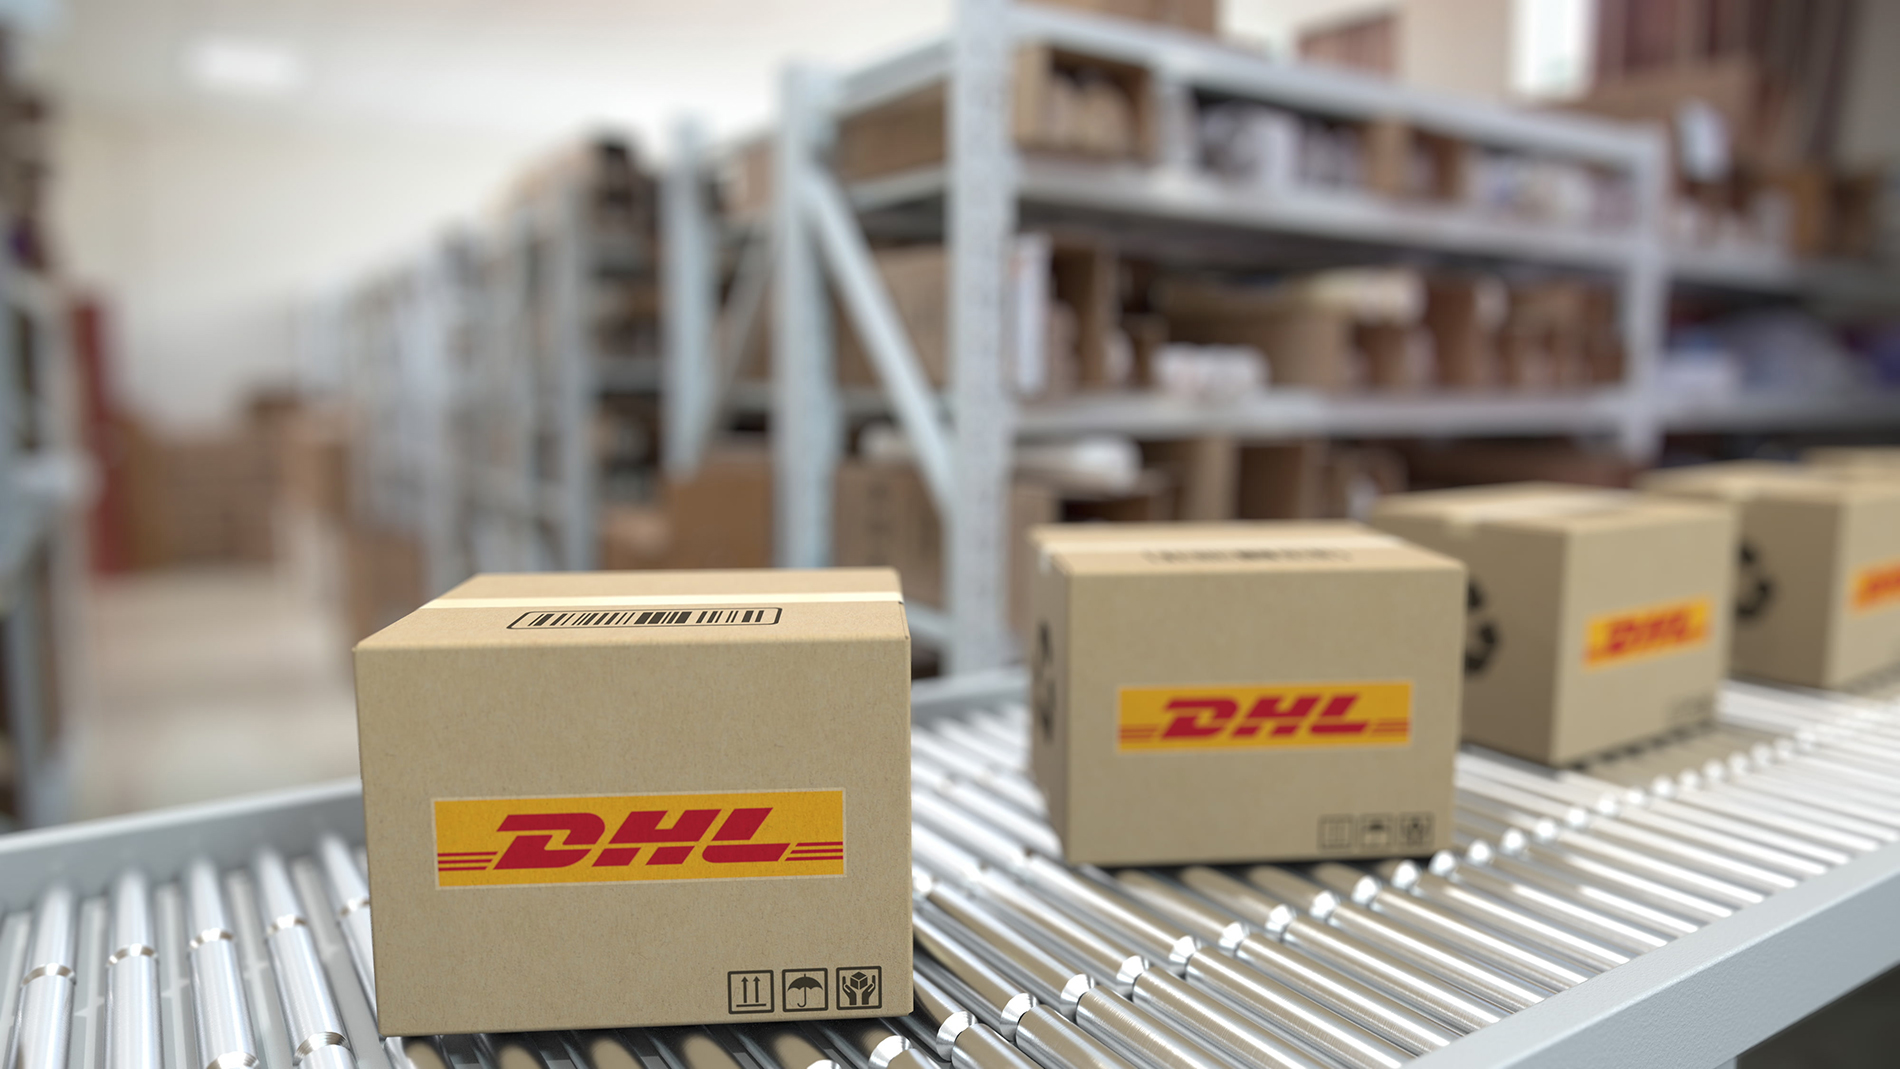  DHL Supply Chain expande e moderniza estrutura com novo Centro de Distribuição em Goiás